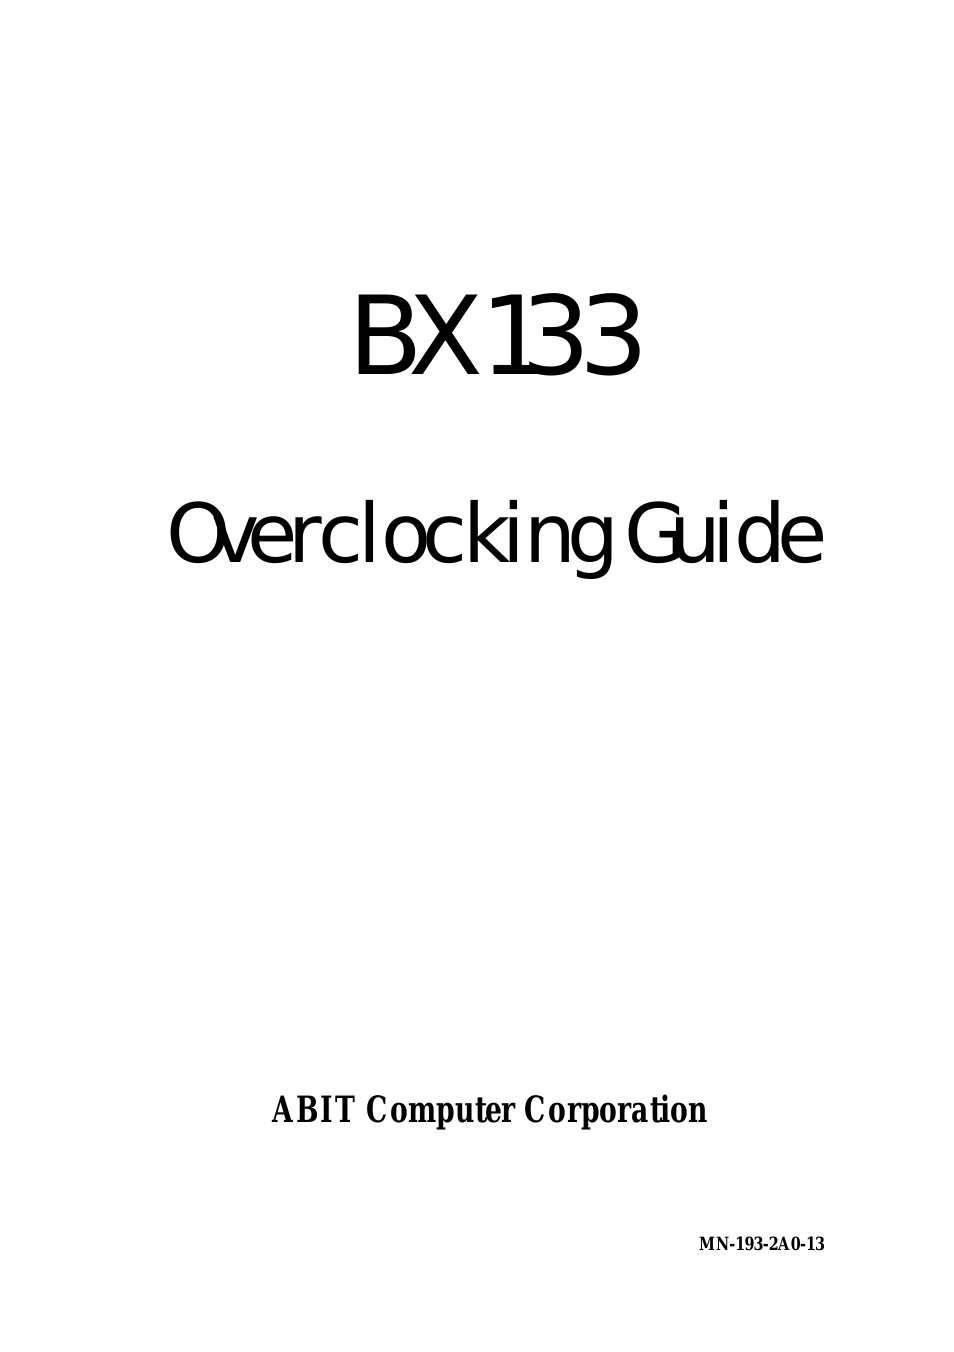 BX 133